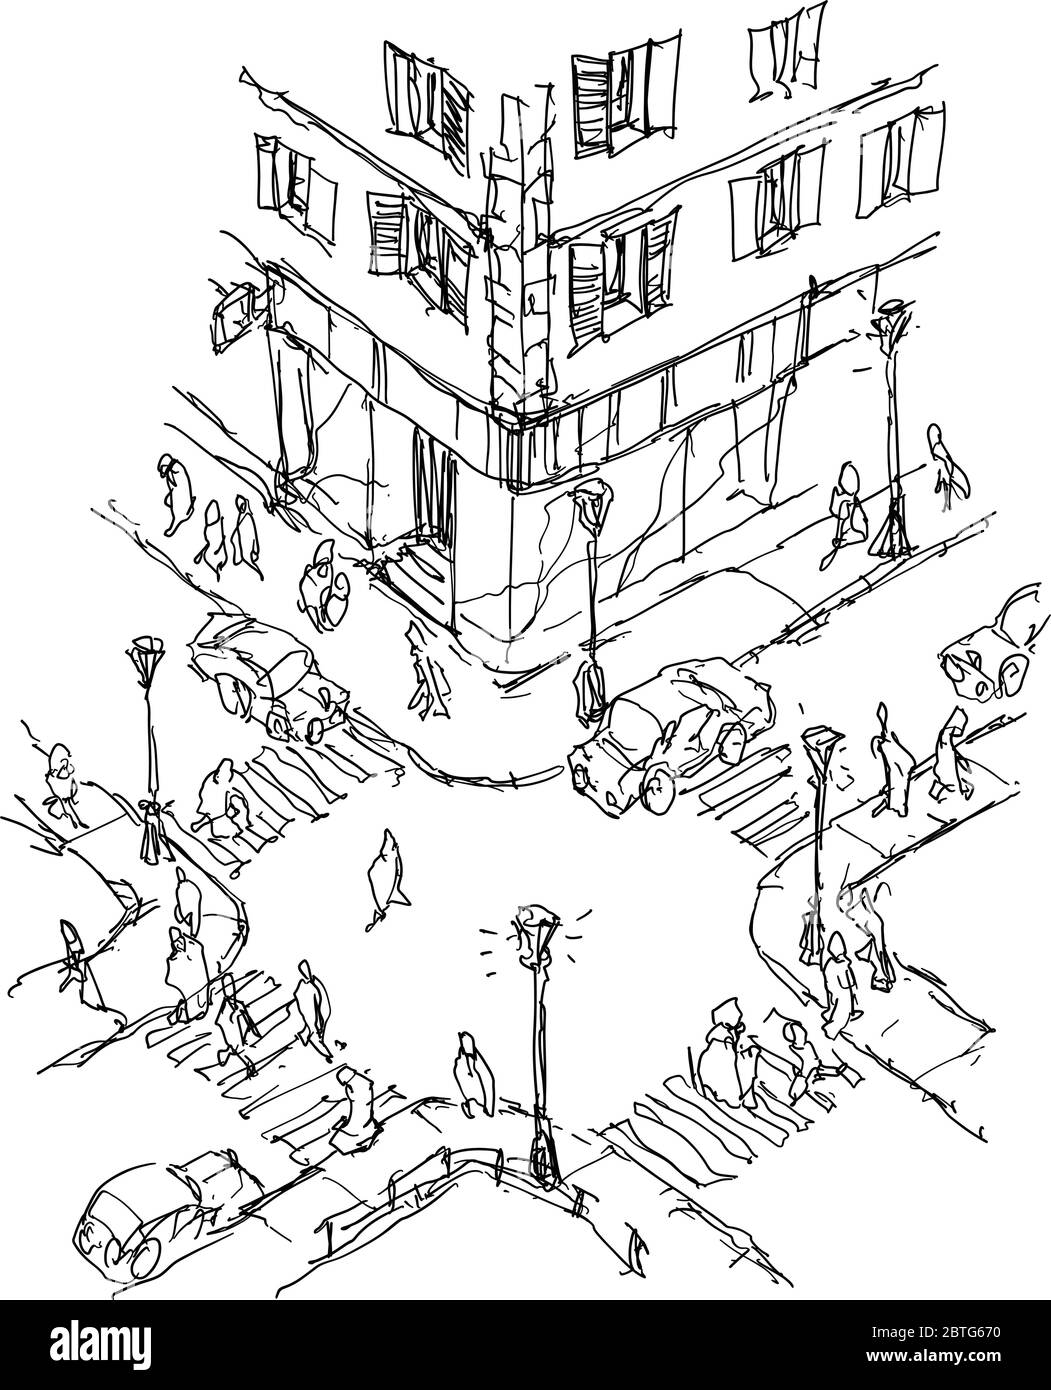 croquis architectural dessiné à la main du carrefour urbain avec des voitures et des personnes marchant sur le trottoir Illustration de Vecteur